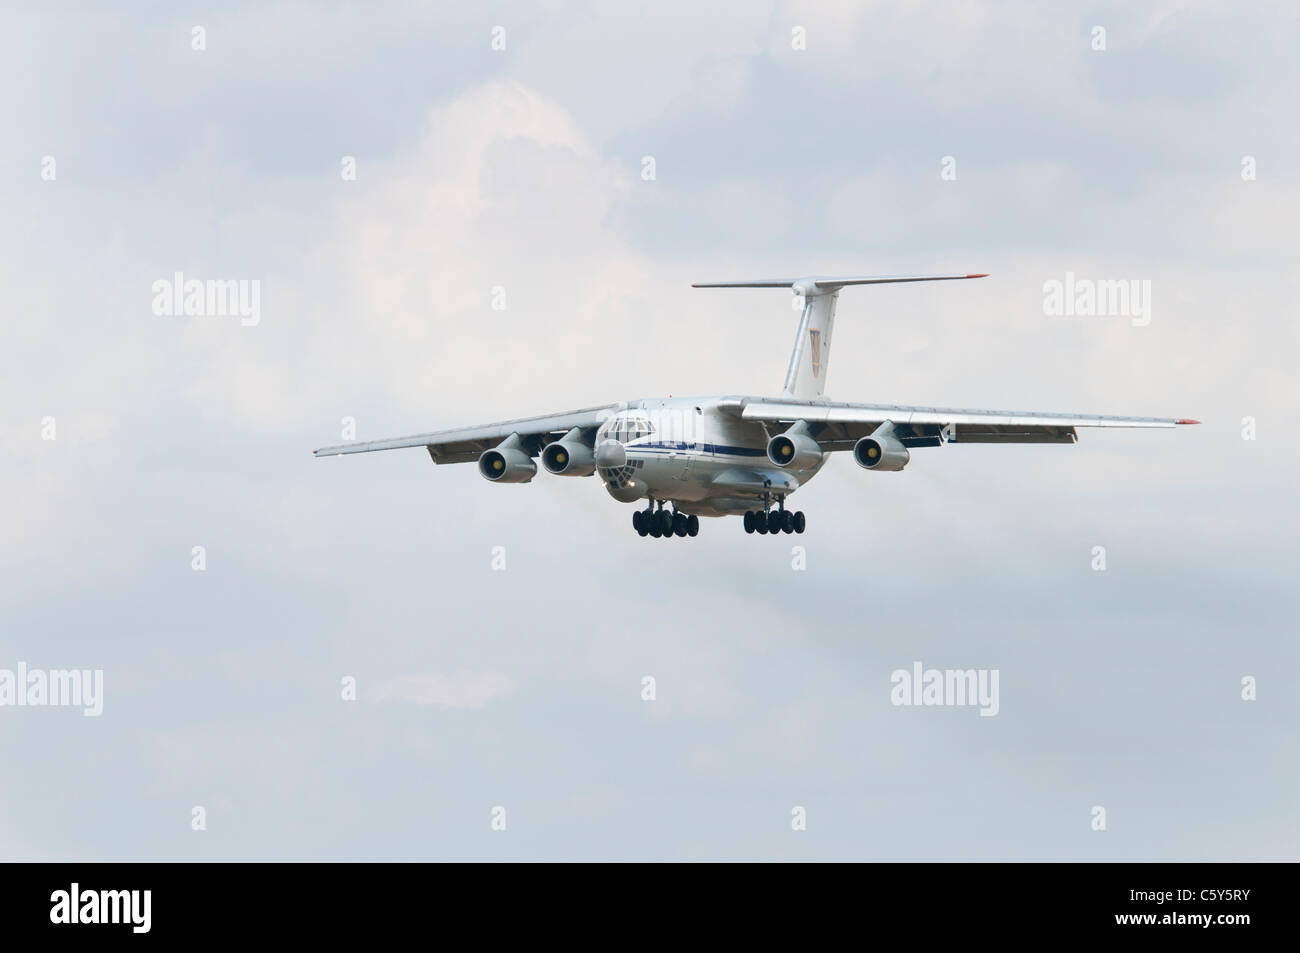 L'Armée de l'air ukrainienne les avions lourds de transport Iliouchine Il-76 78820 en approche finale pour son arrivée à l'Air Tattoo 2011 Banque D'Images